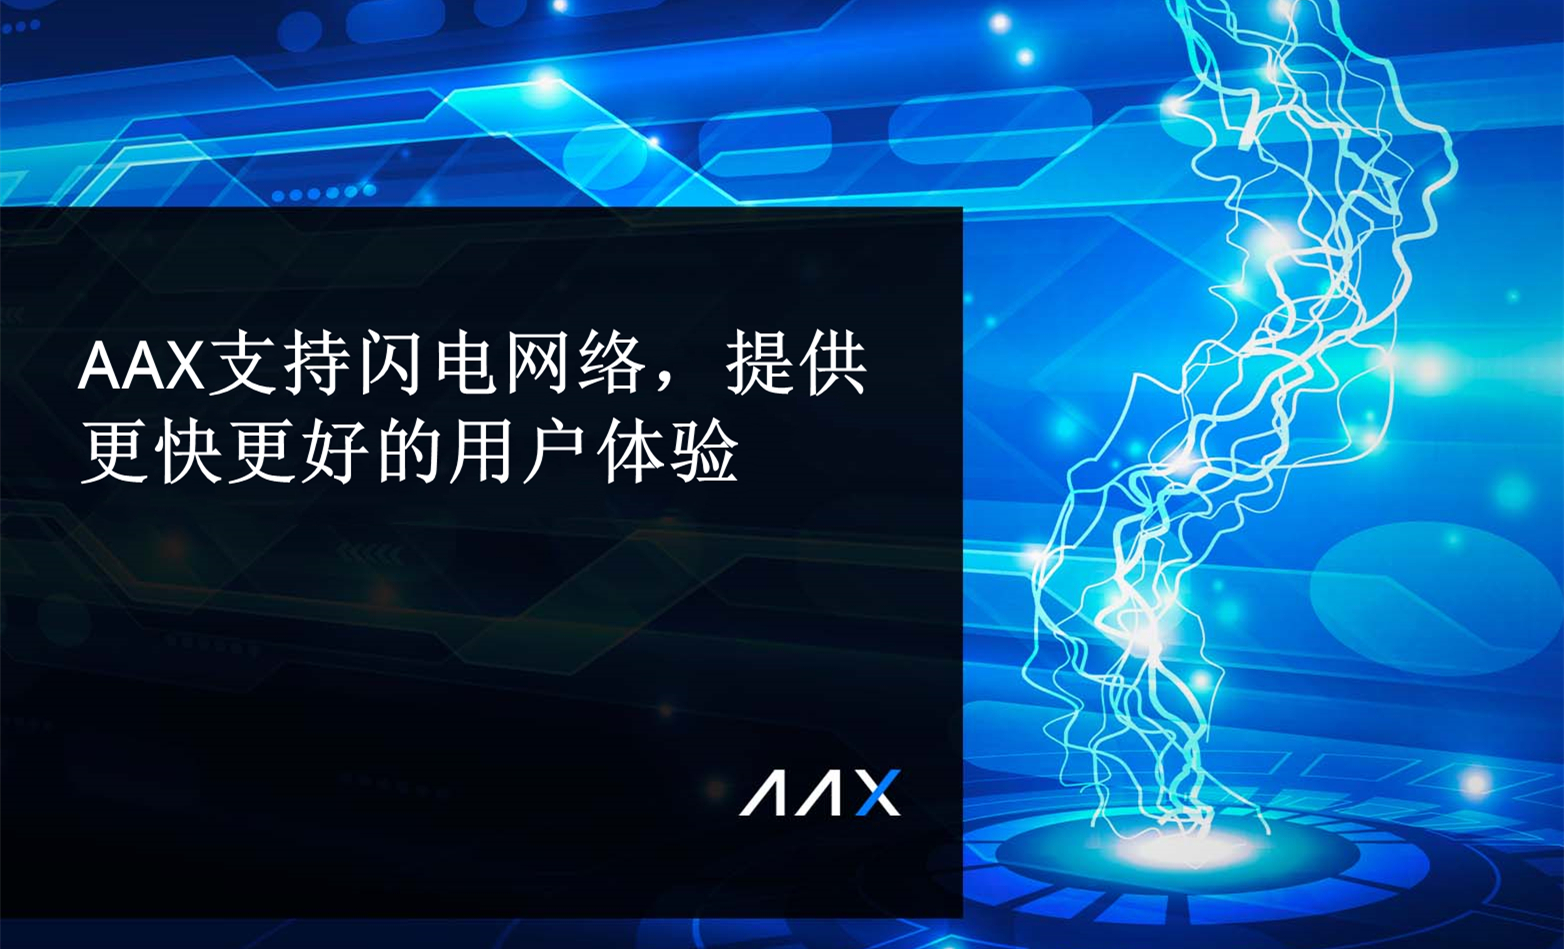 AAX支持闪电网络，提供更快更好的用户体验